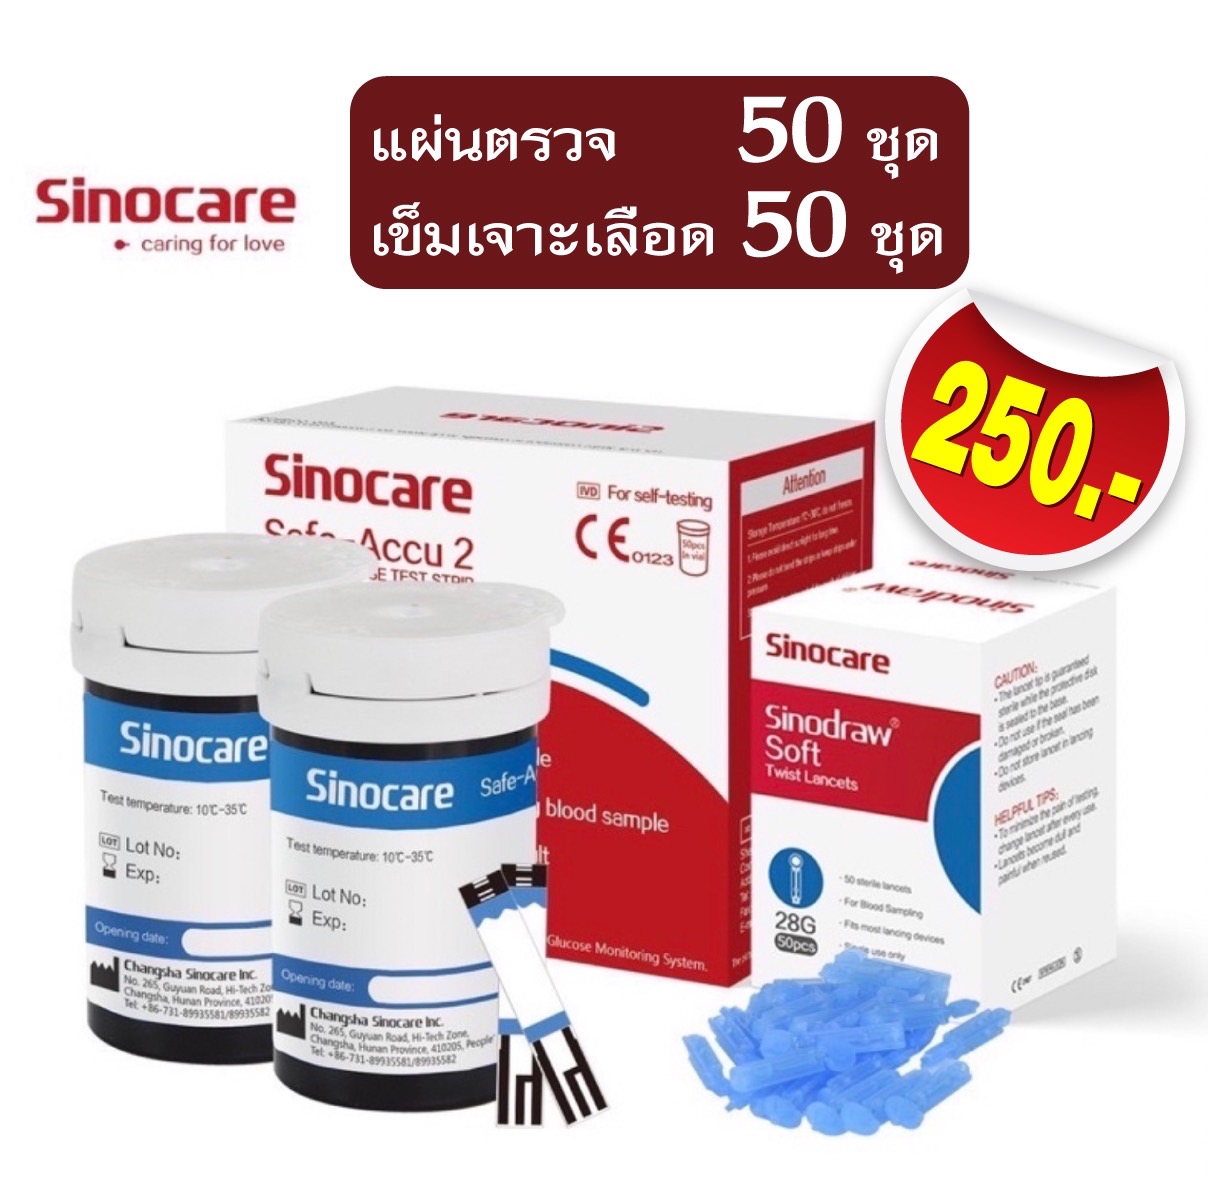 ภาพประกอบของ แผ่นสำหรับเครื่องวัดน้ำตาลในเลือด Sinocare รุ่น Safe-accu2